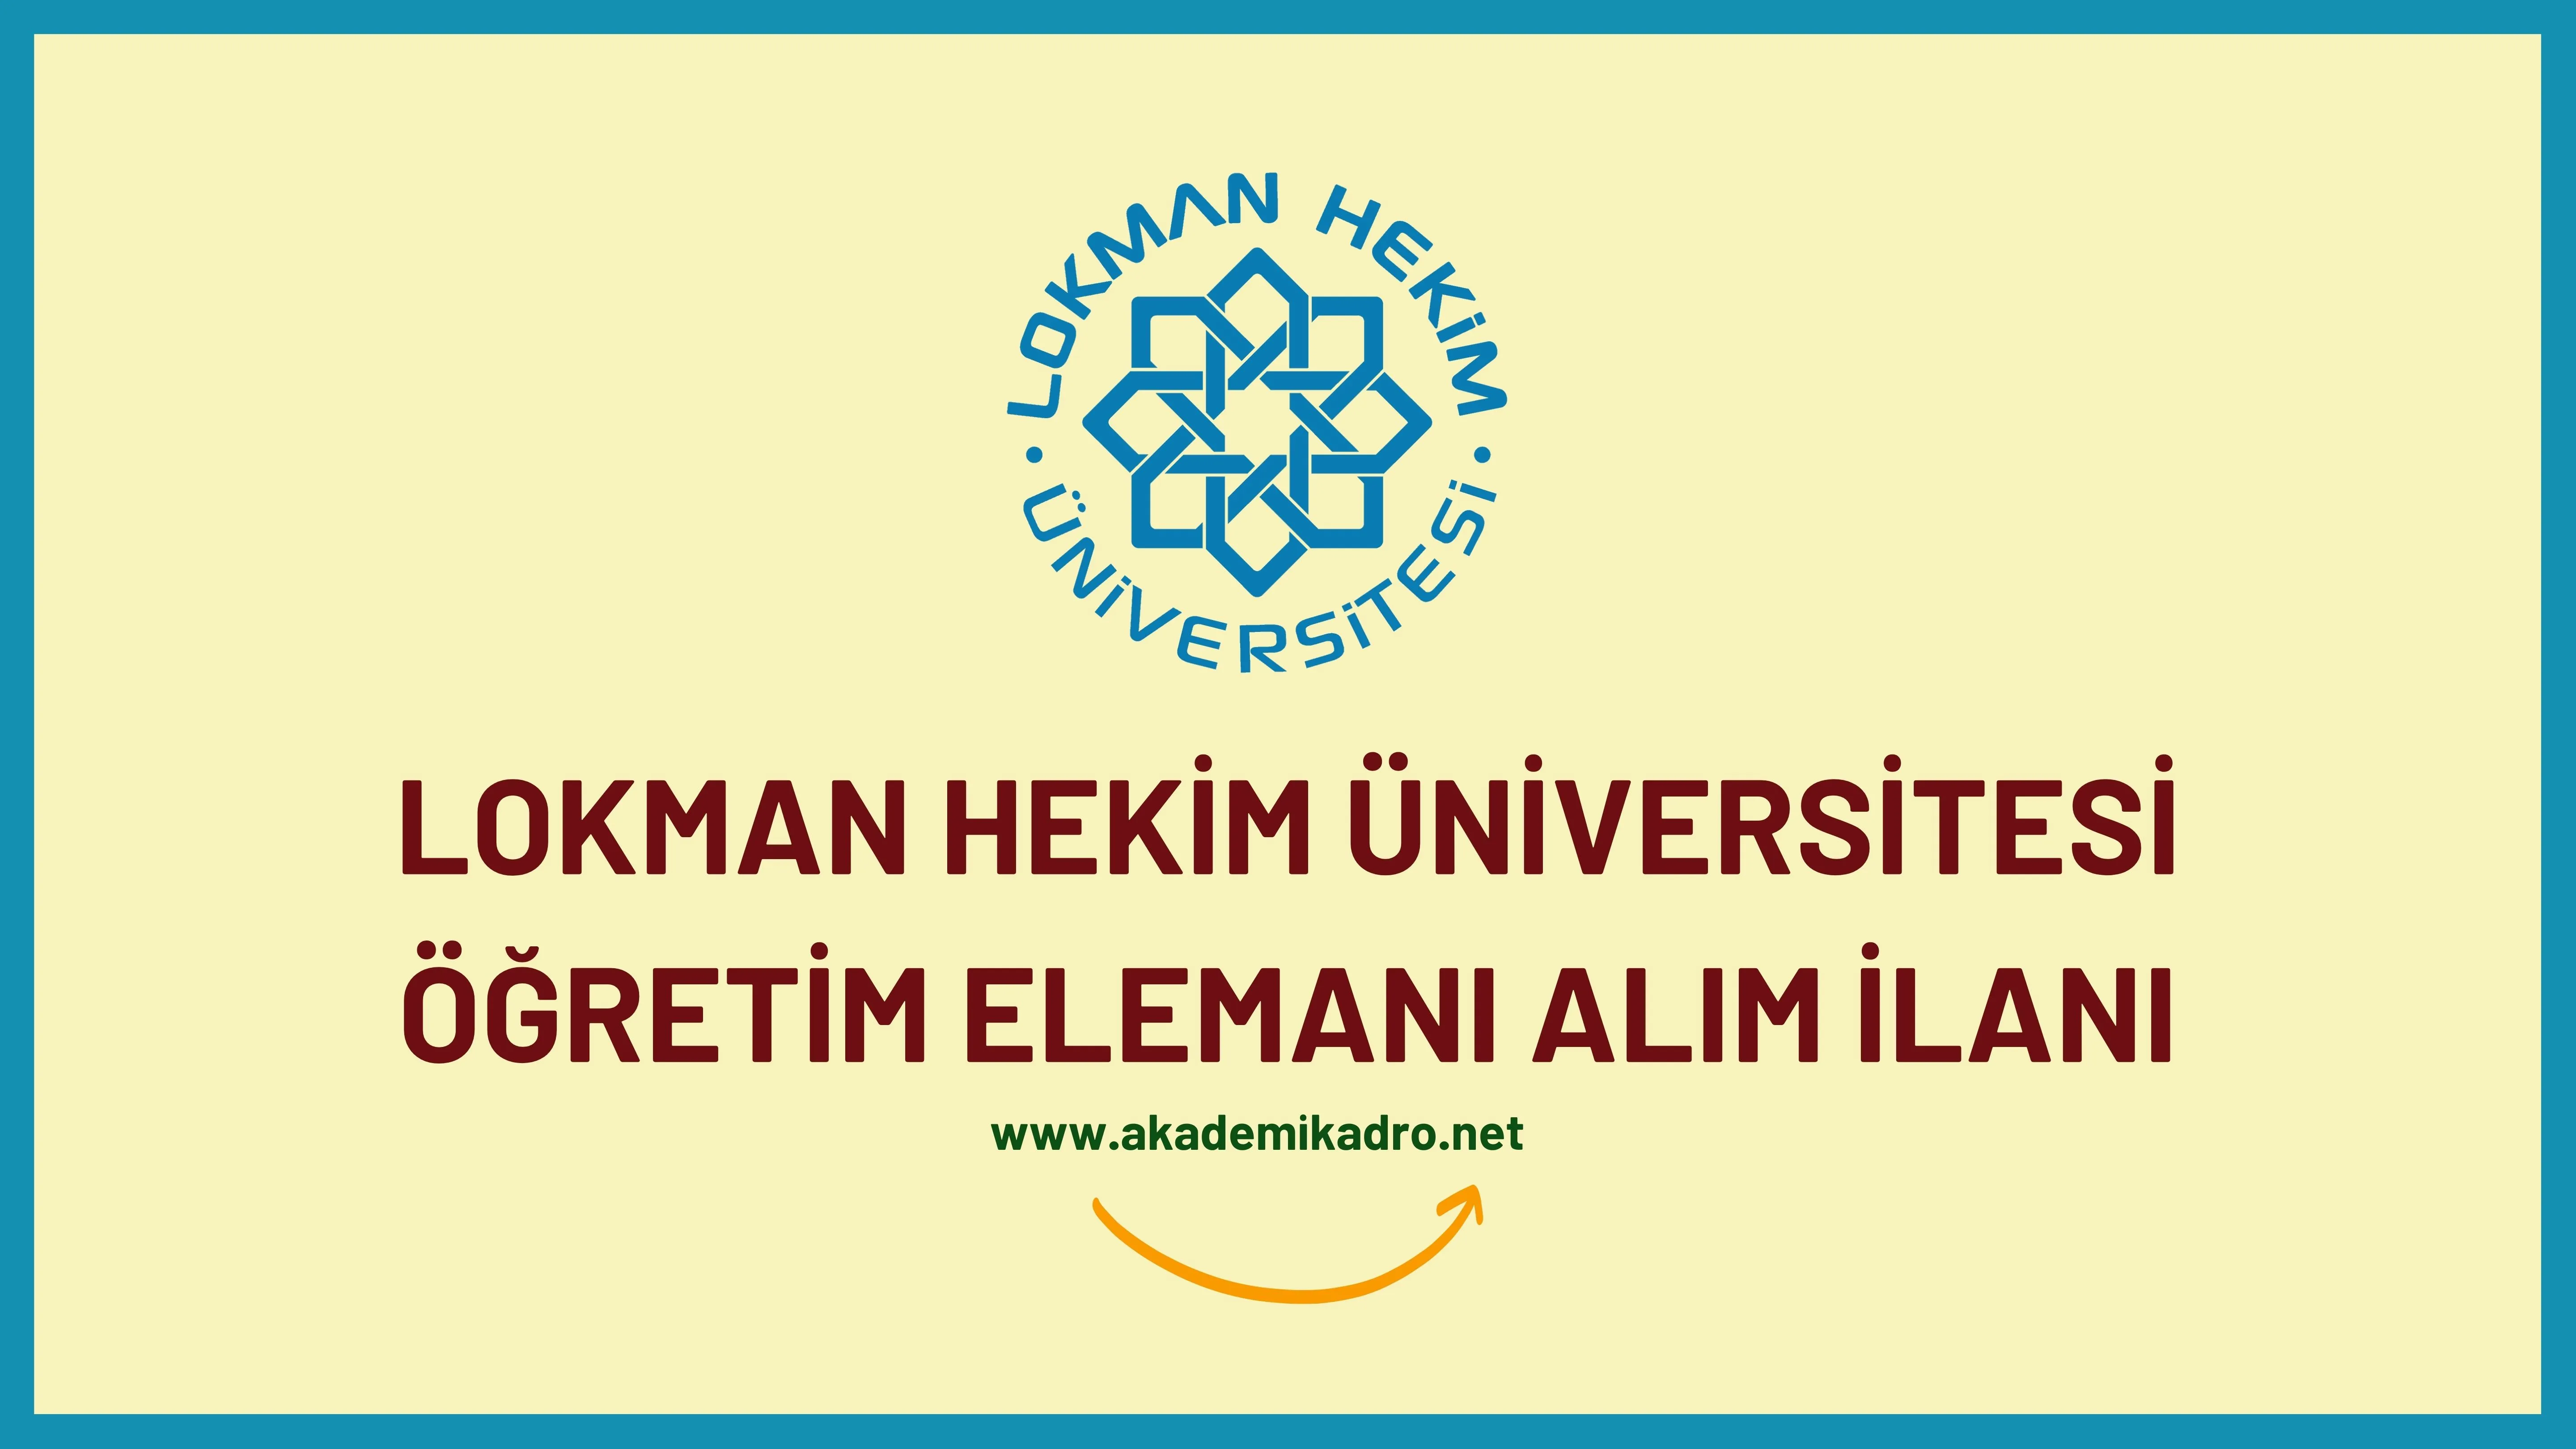 Lokman Hekim Üniversitesi 4 Araştırma görevlisi ve 20 Öğretim üyesi alacak.